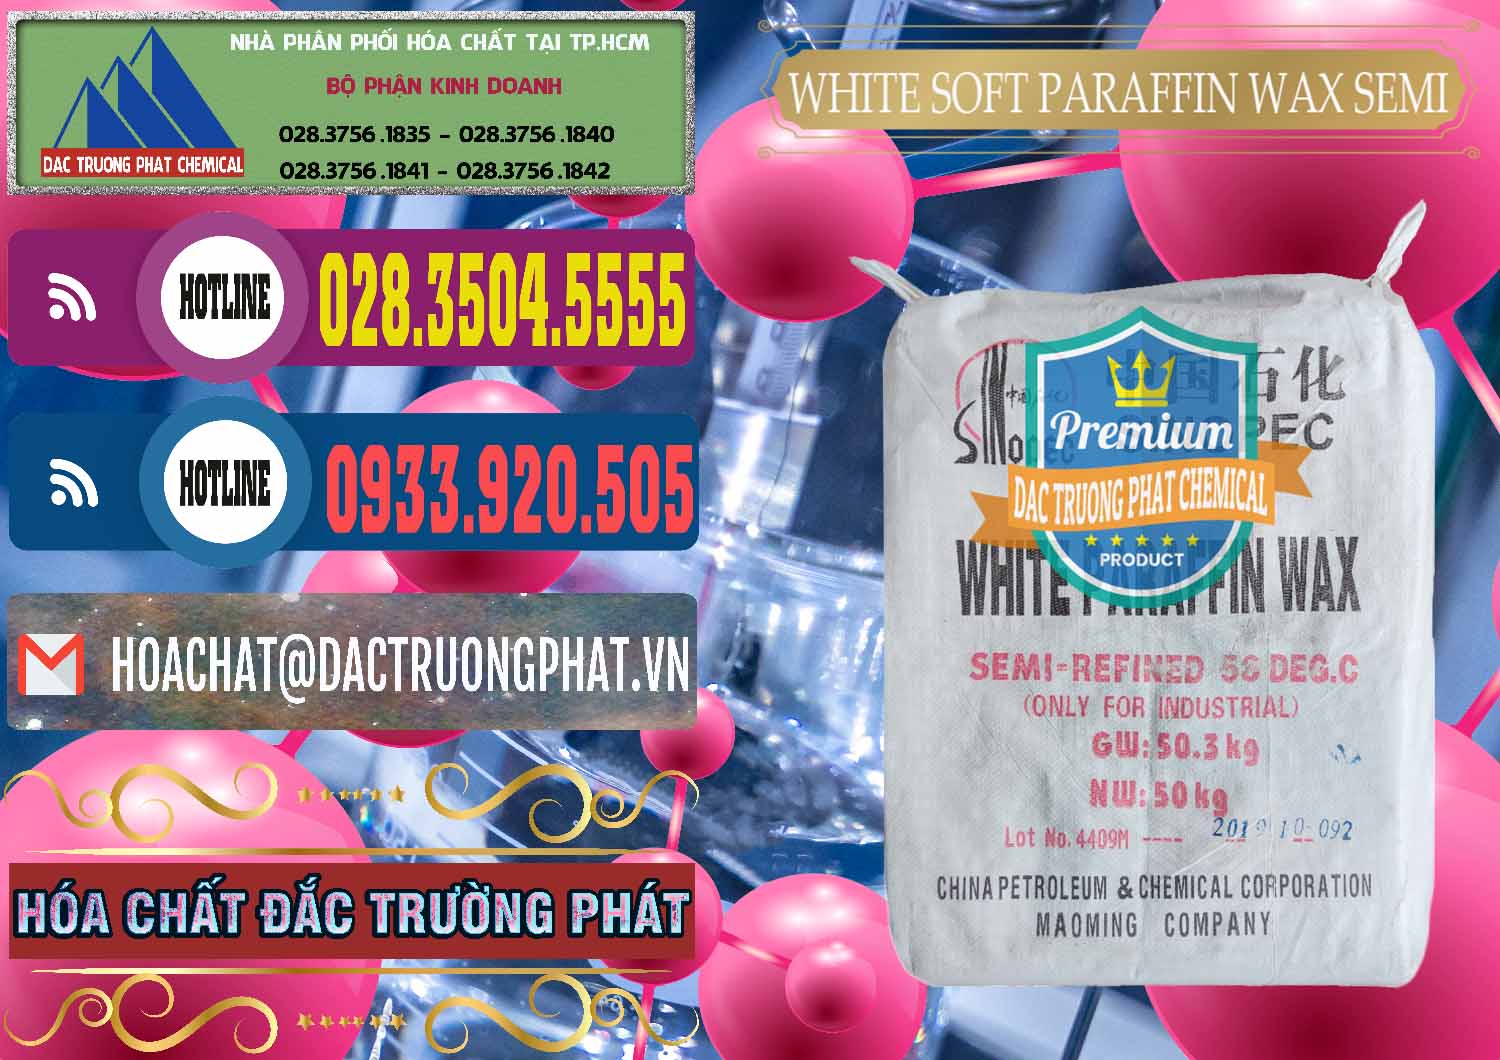 Nơi chuyên nhập khẩu và bán Sáp Paraffin Wax Sinopec Trung Quốc China - 0328 - Nhập khẩu và cung cấp hóa chất tại TP.HCM - muabanhoachat.com.vn